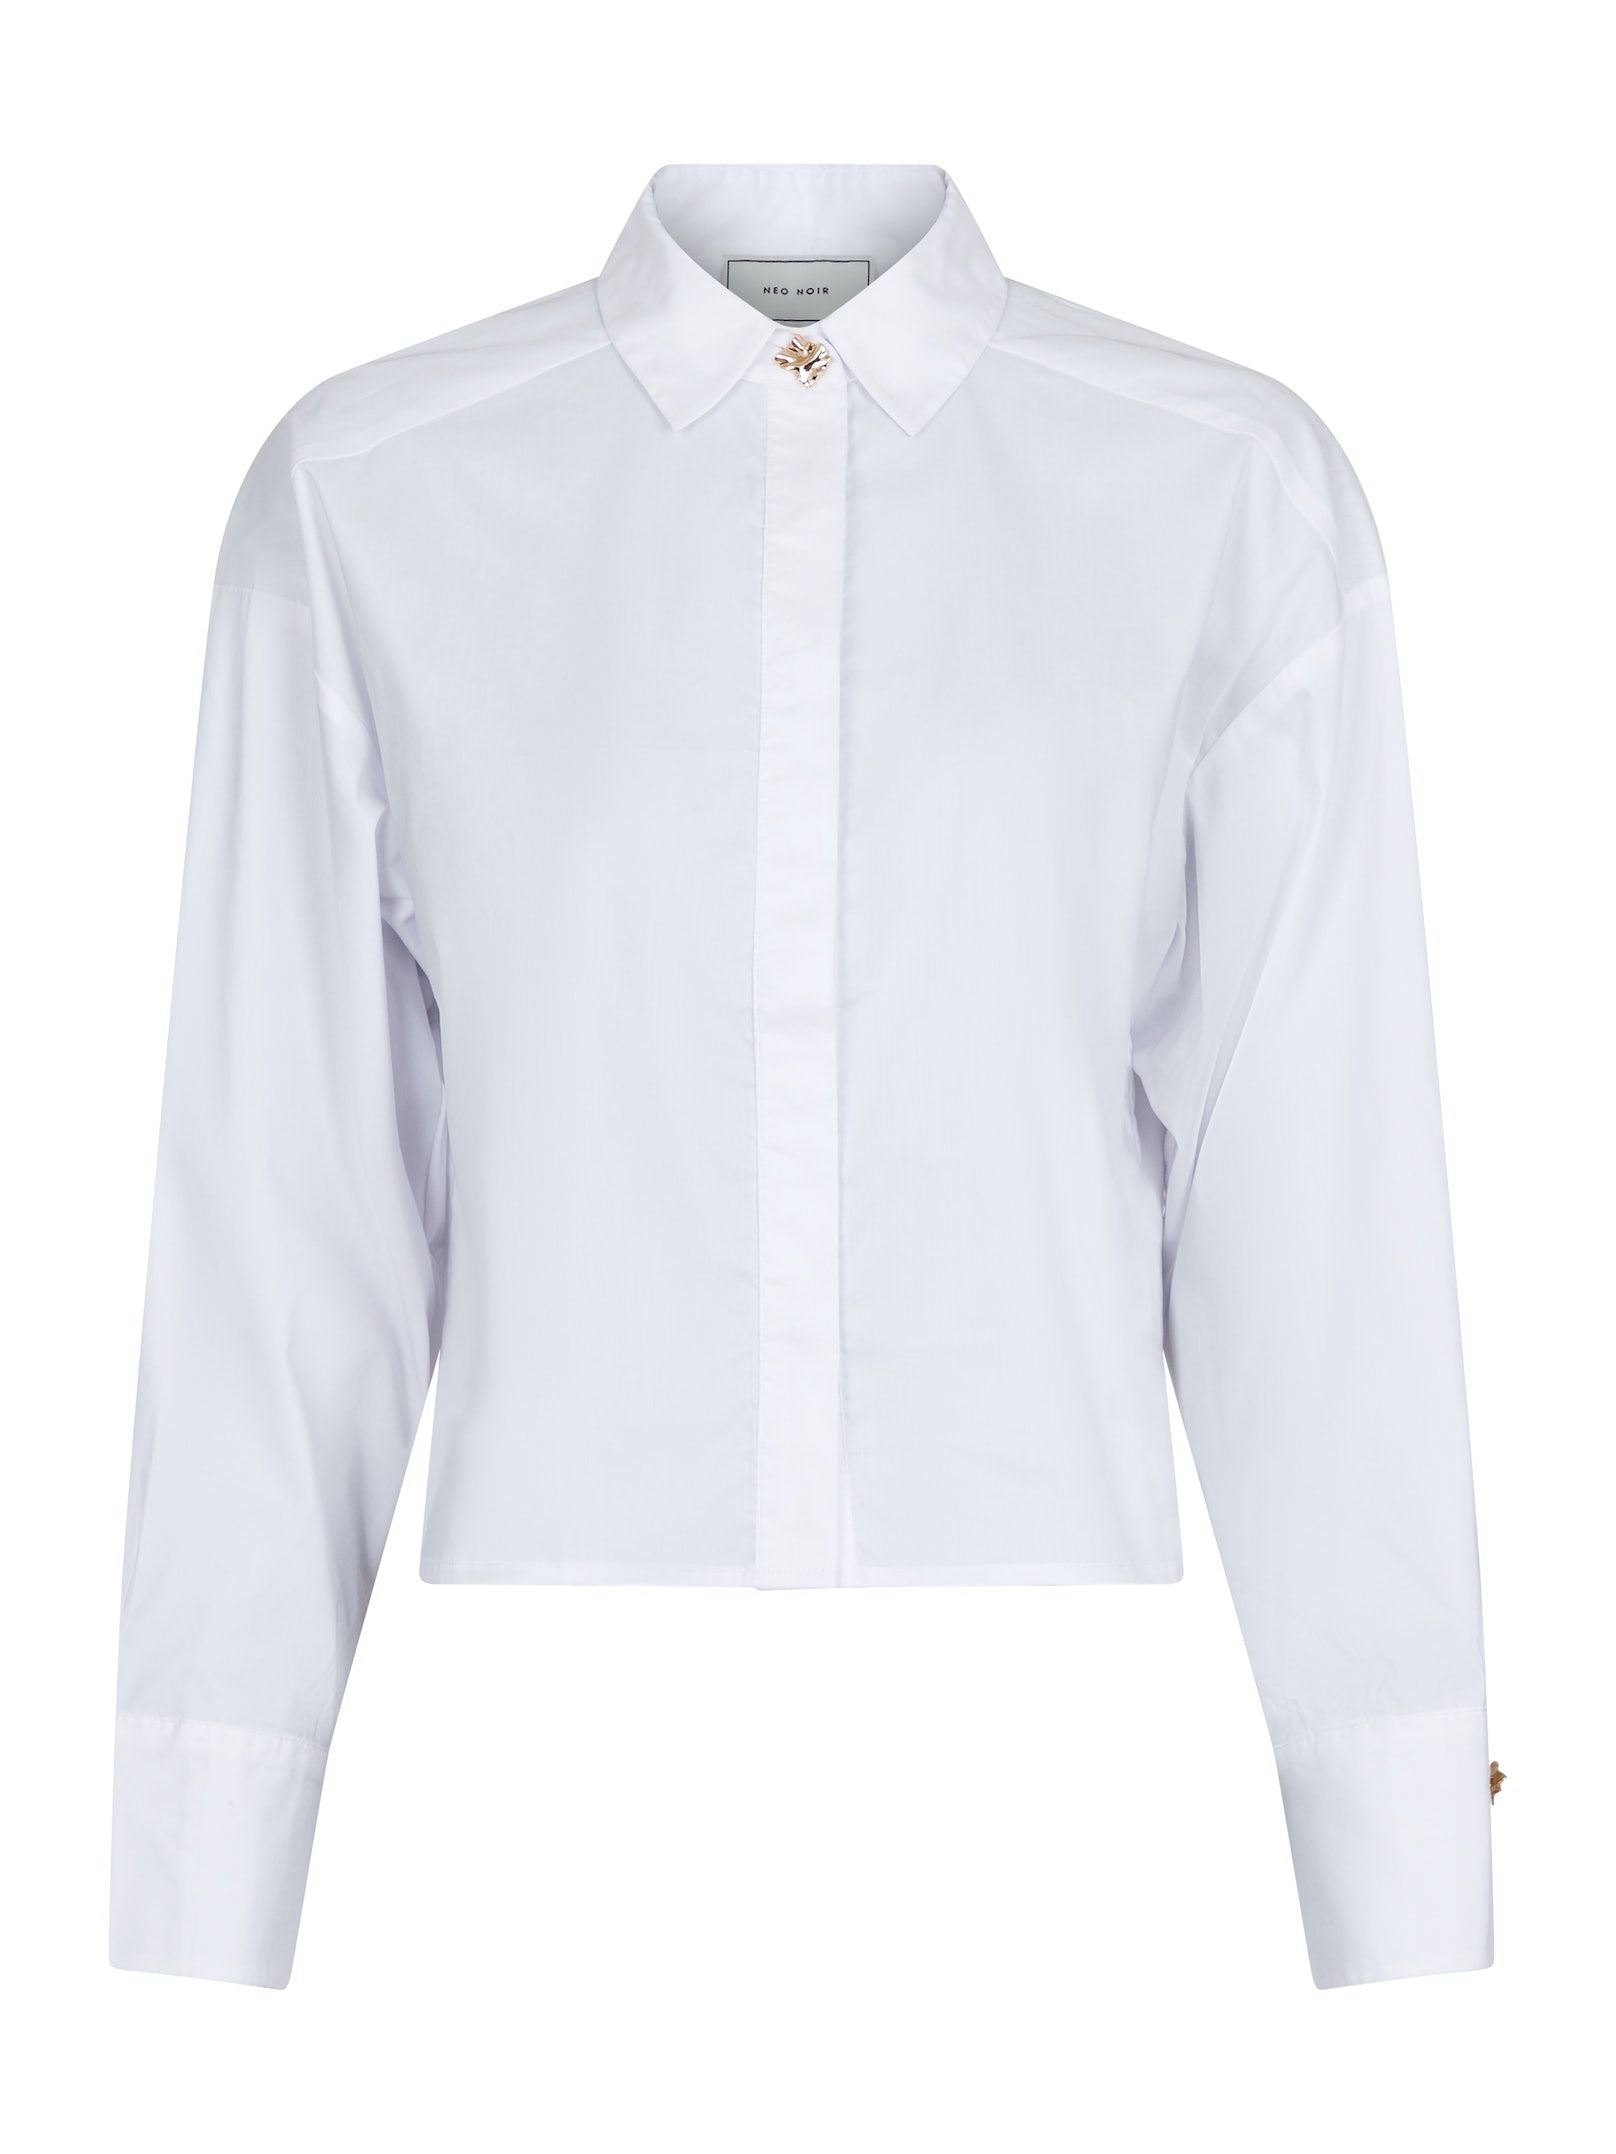 Wisla Poplin Shirt White